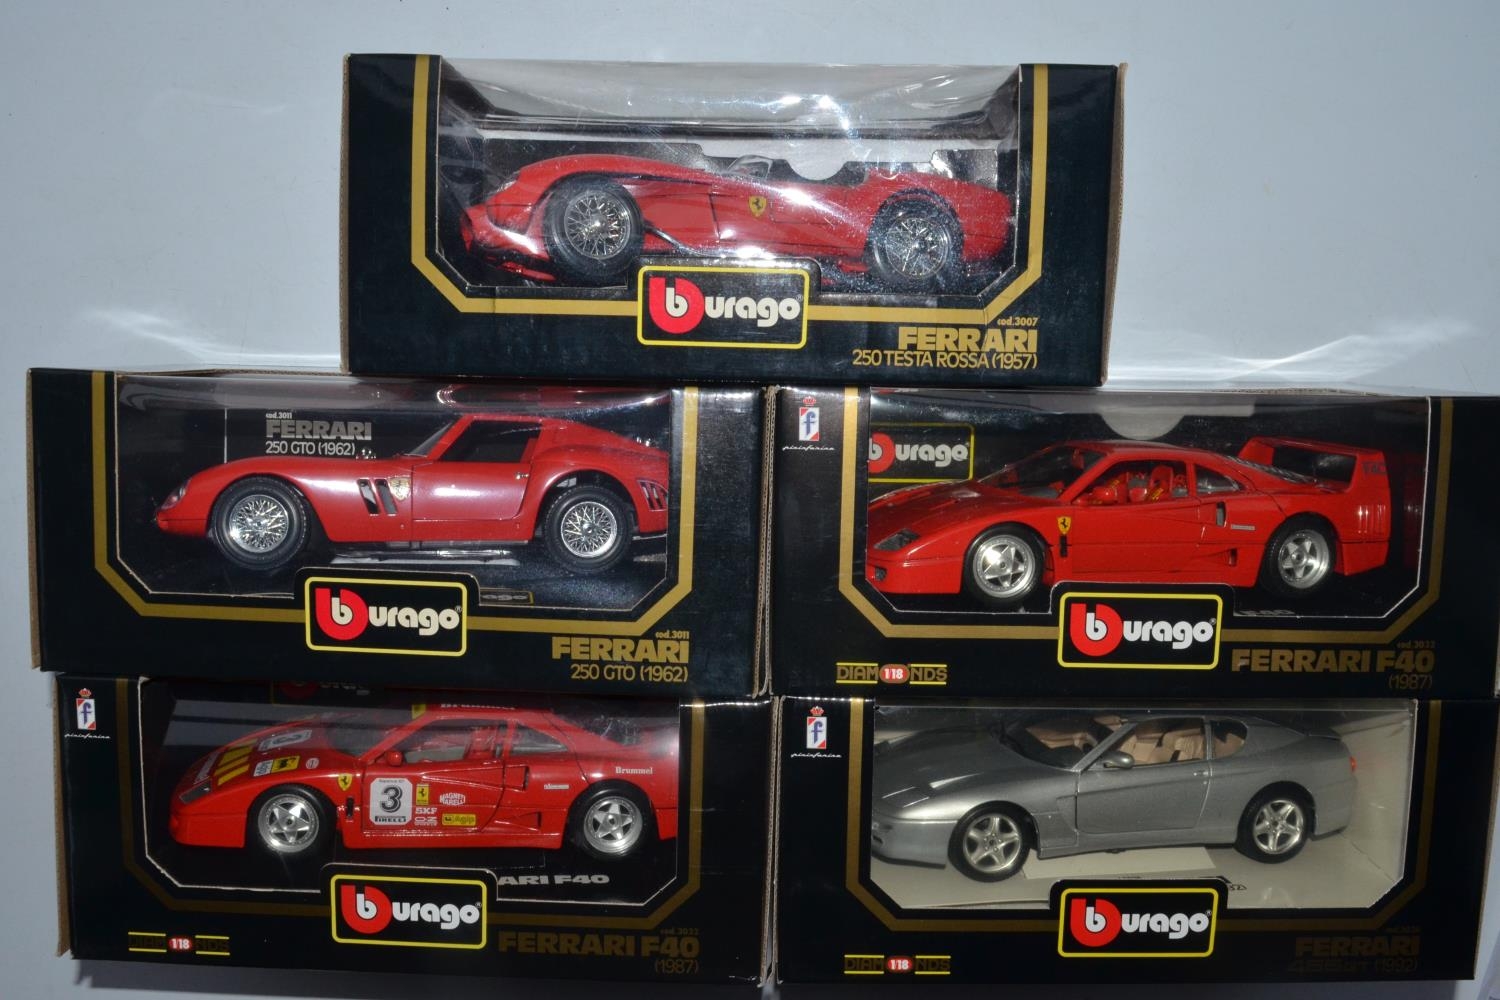 Burago 1/18 Scale Diecast 3007 - 1957 Ferrari 250 Testa Rossa - Red